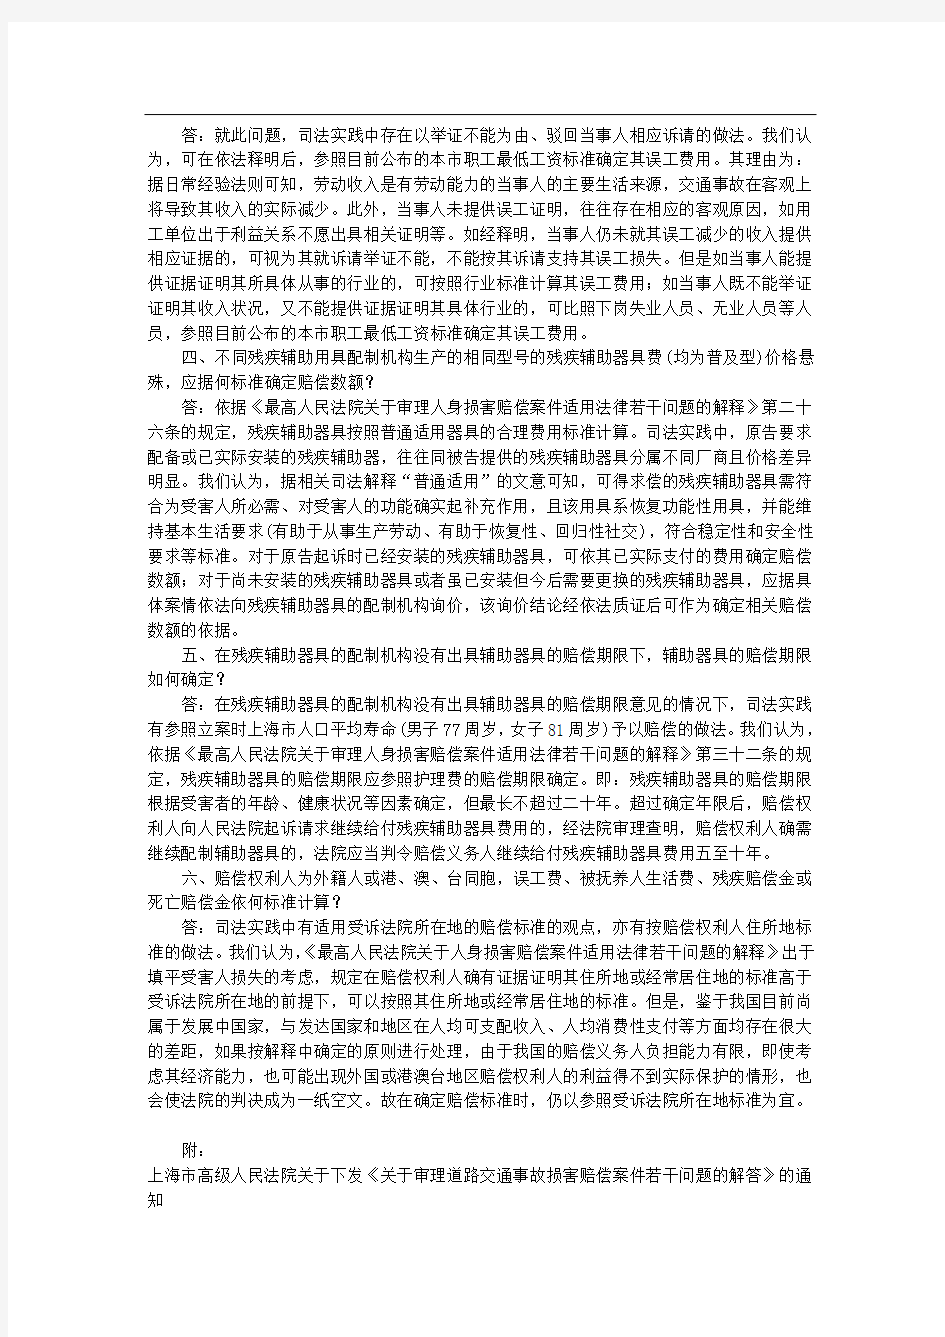 上海高院审理道路交通事故损害赔偿案件若干问题的解答(上海市高级人民法院)(全文)